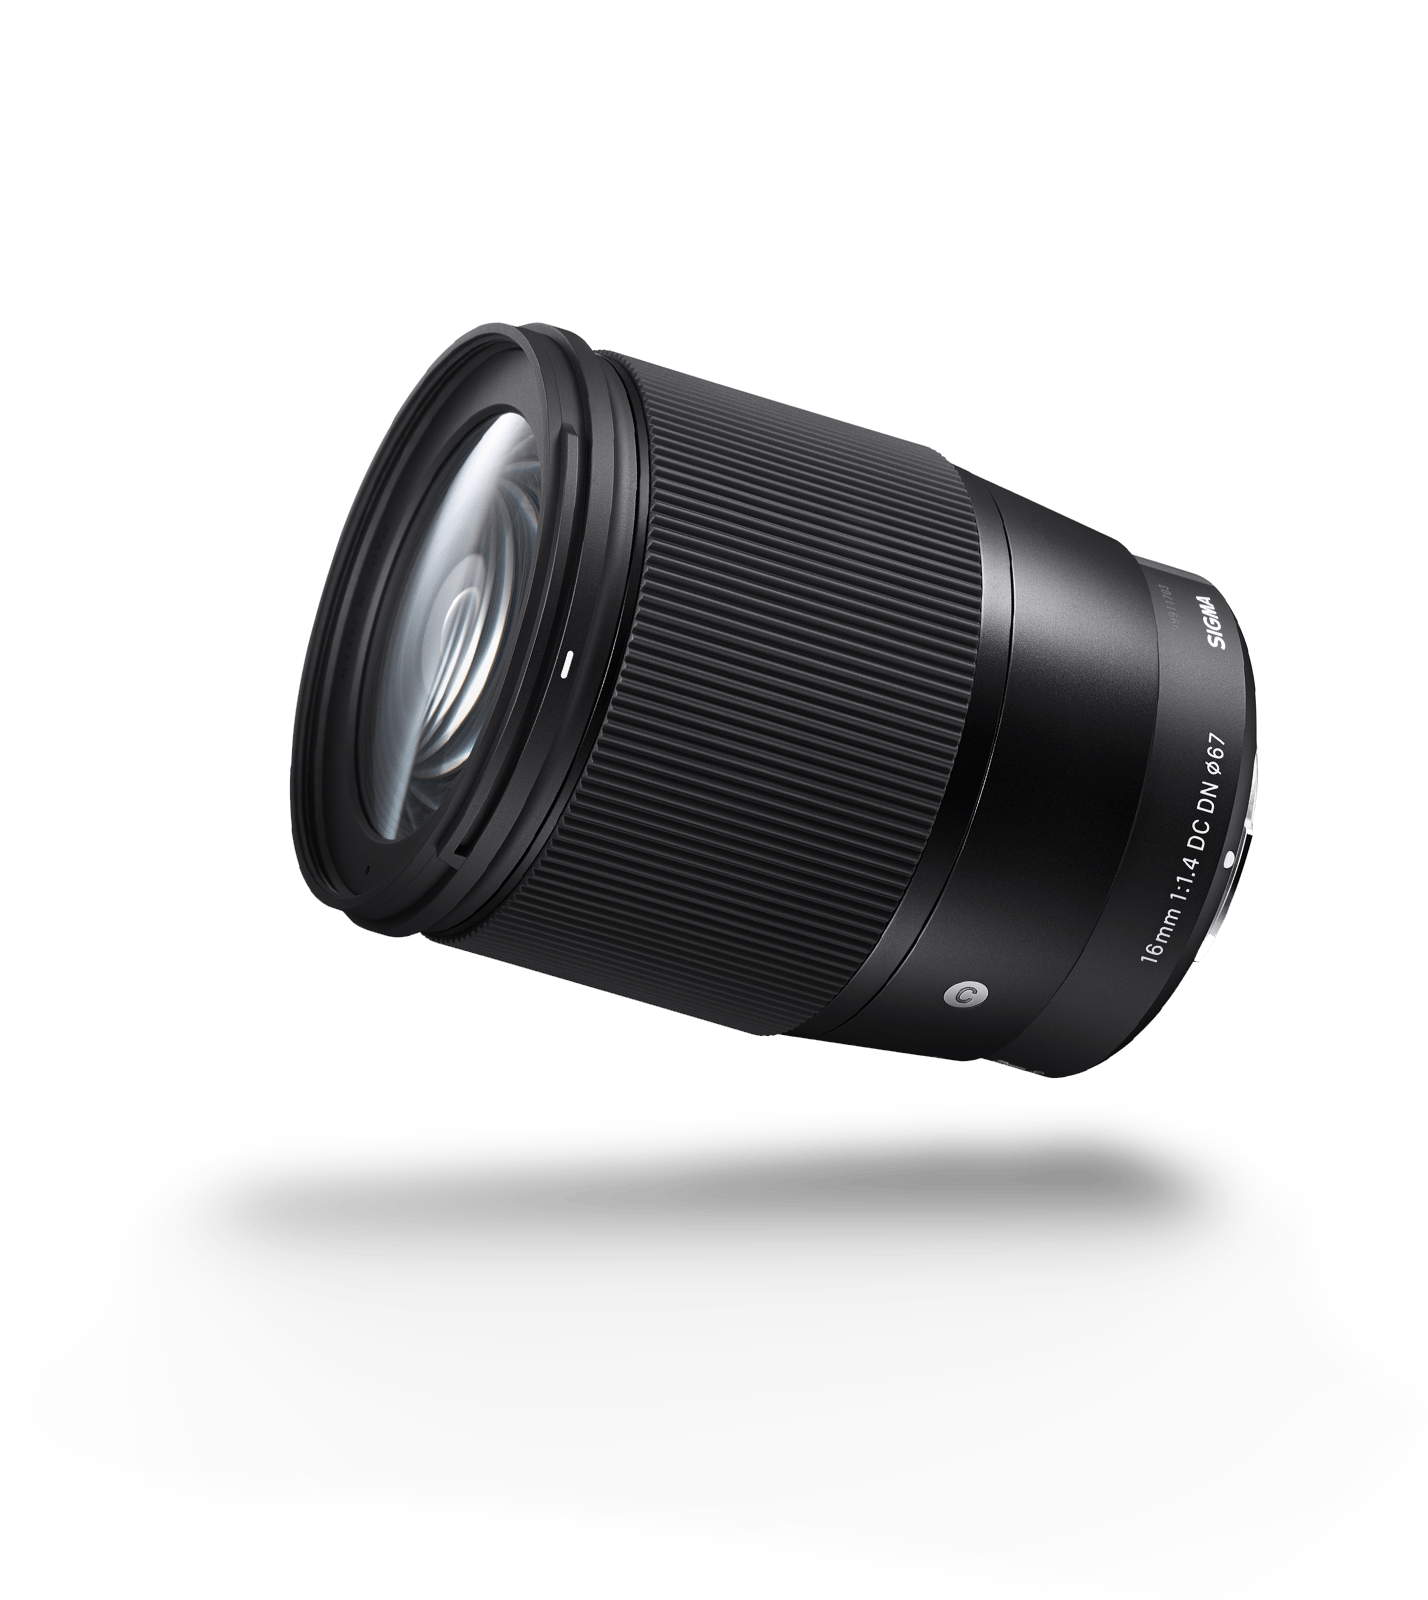 Sigma 16mm f1.4 DC DN Contemporary - Lens – Kamerastore